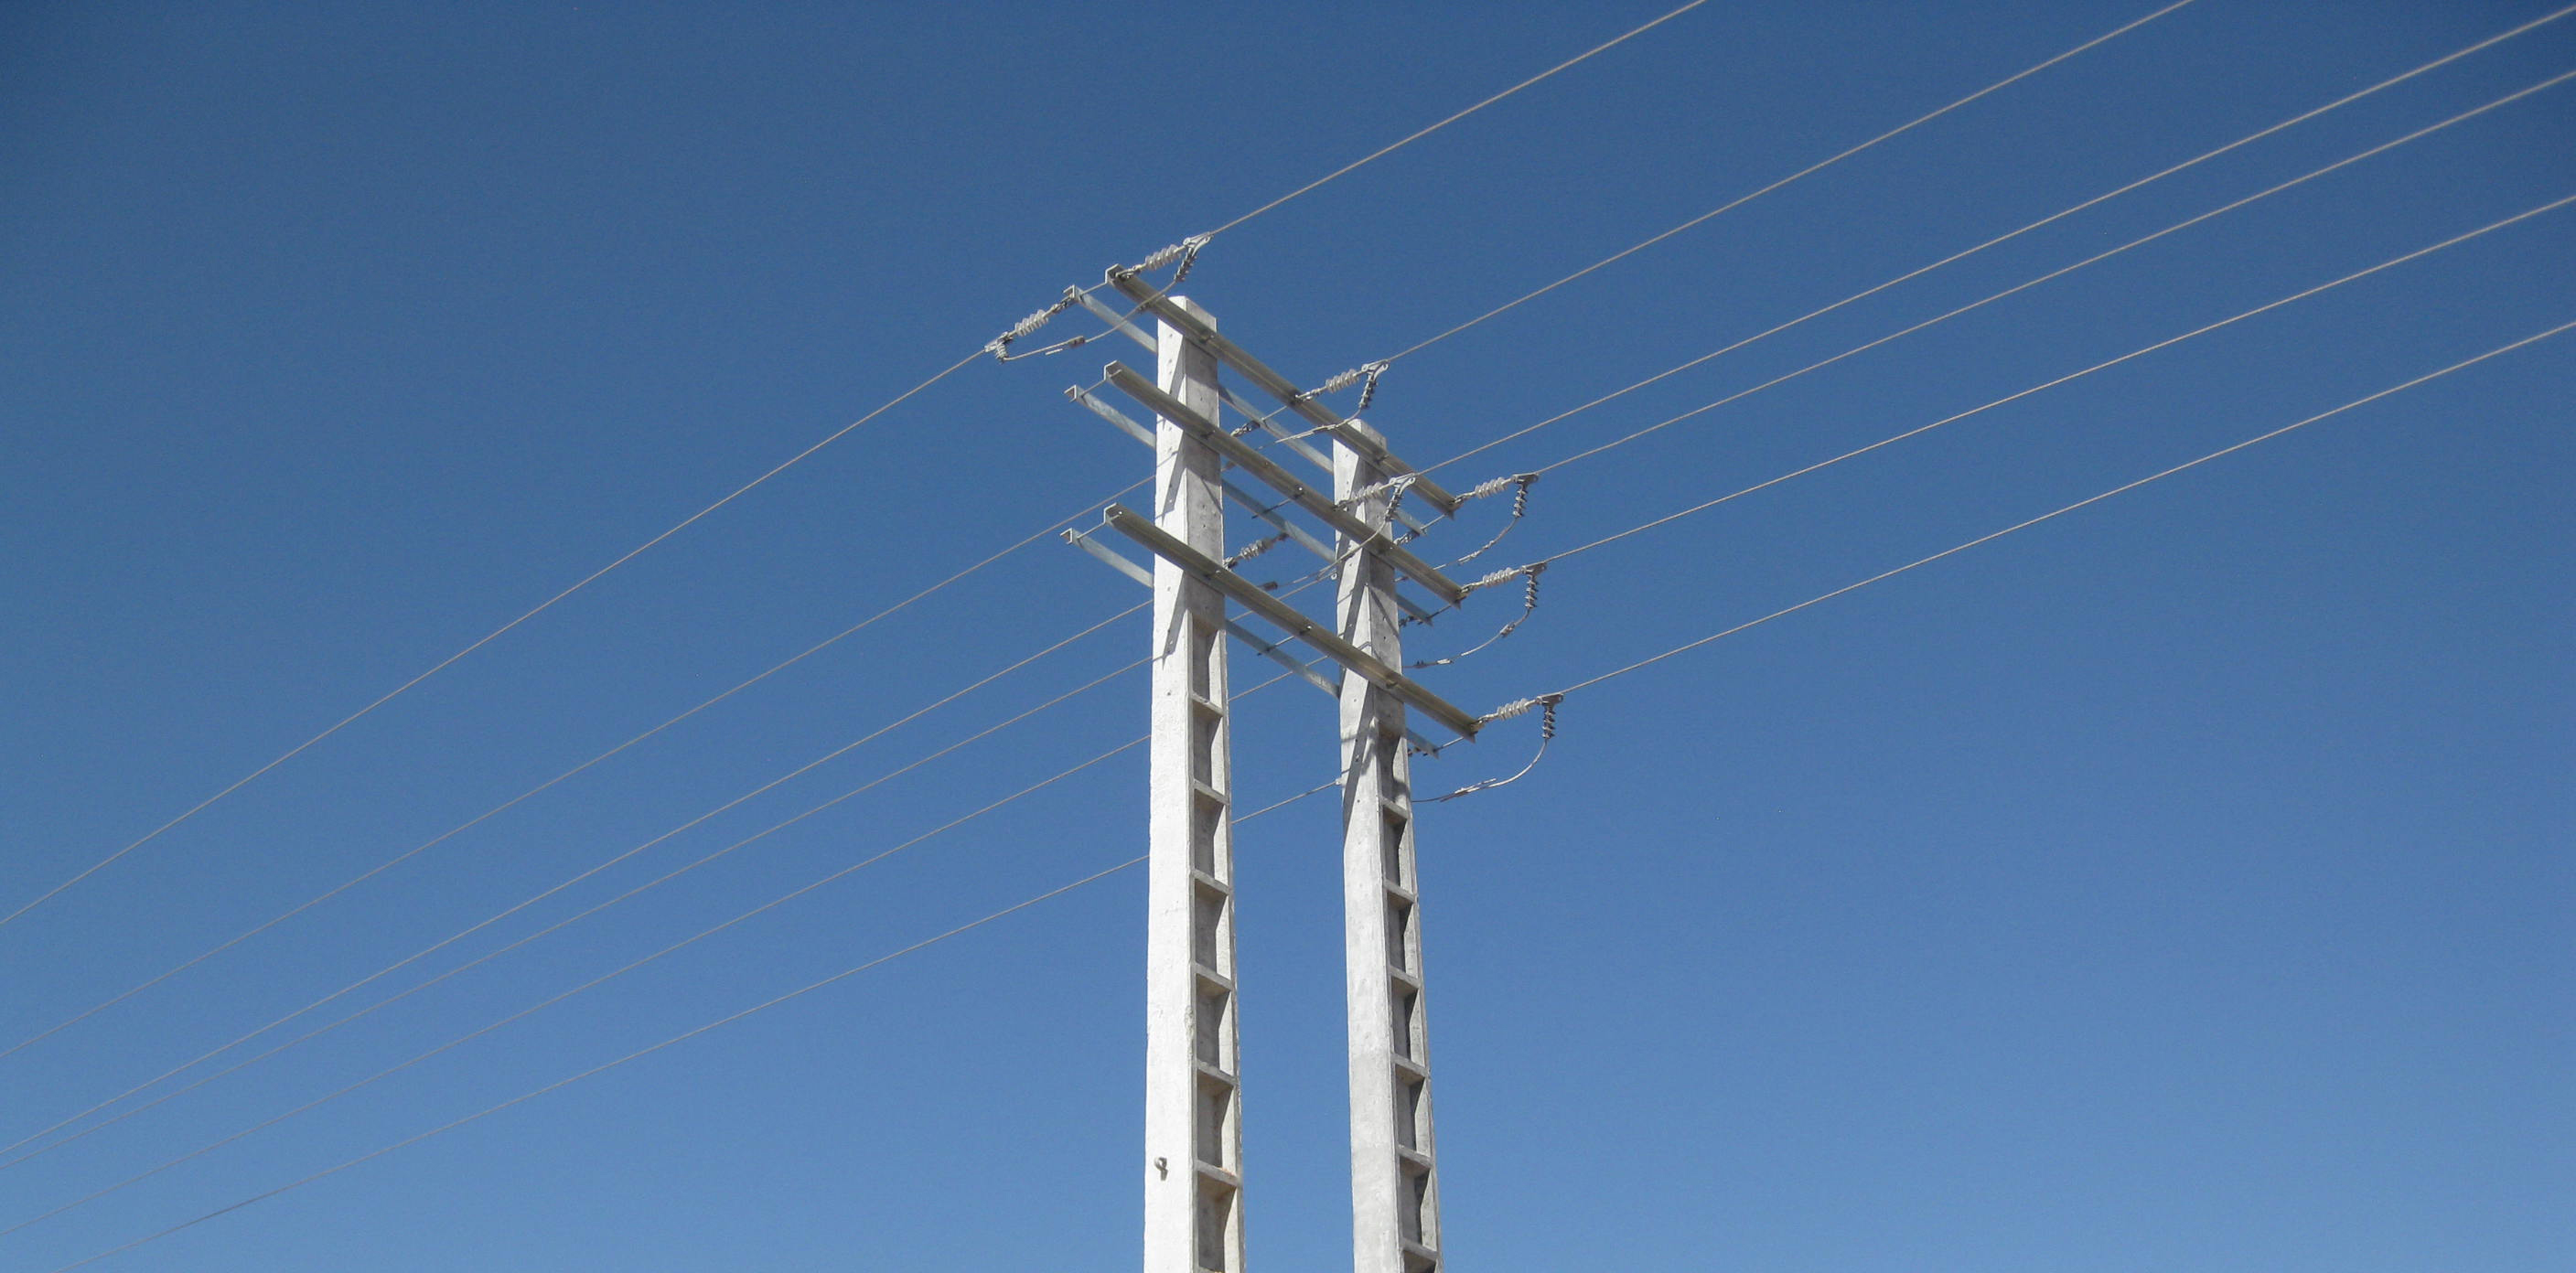 اجرای دو پروژه برق رسانی در شهرستان سامان طی سه ماهه دوم سال